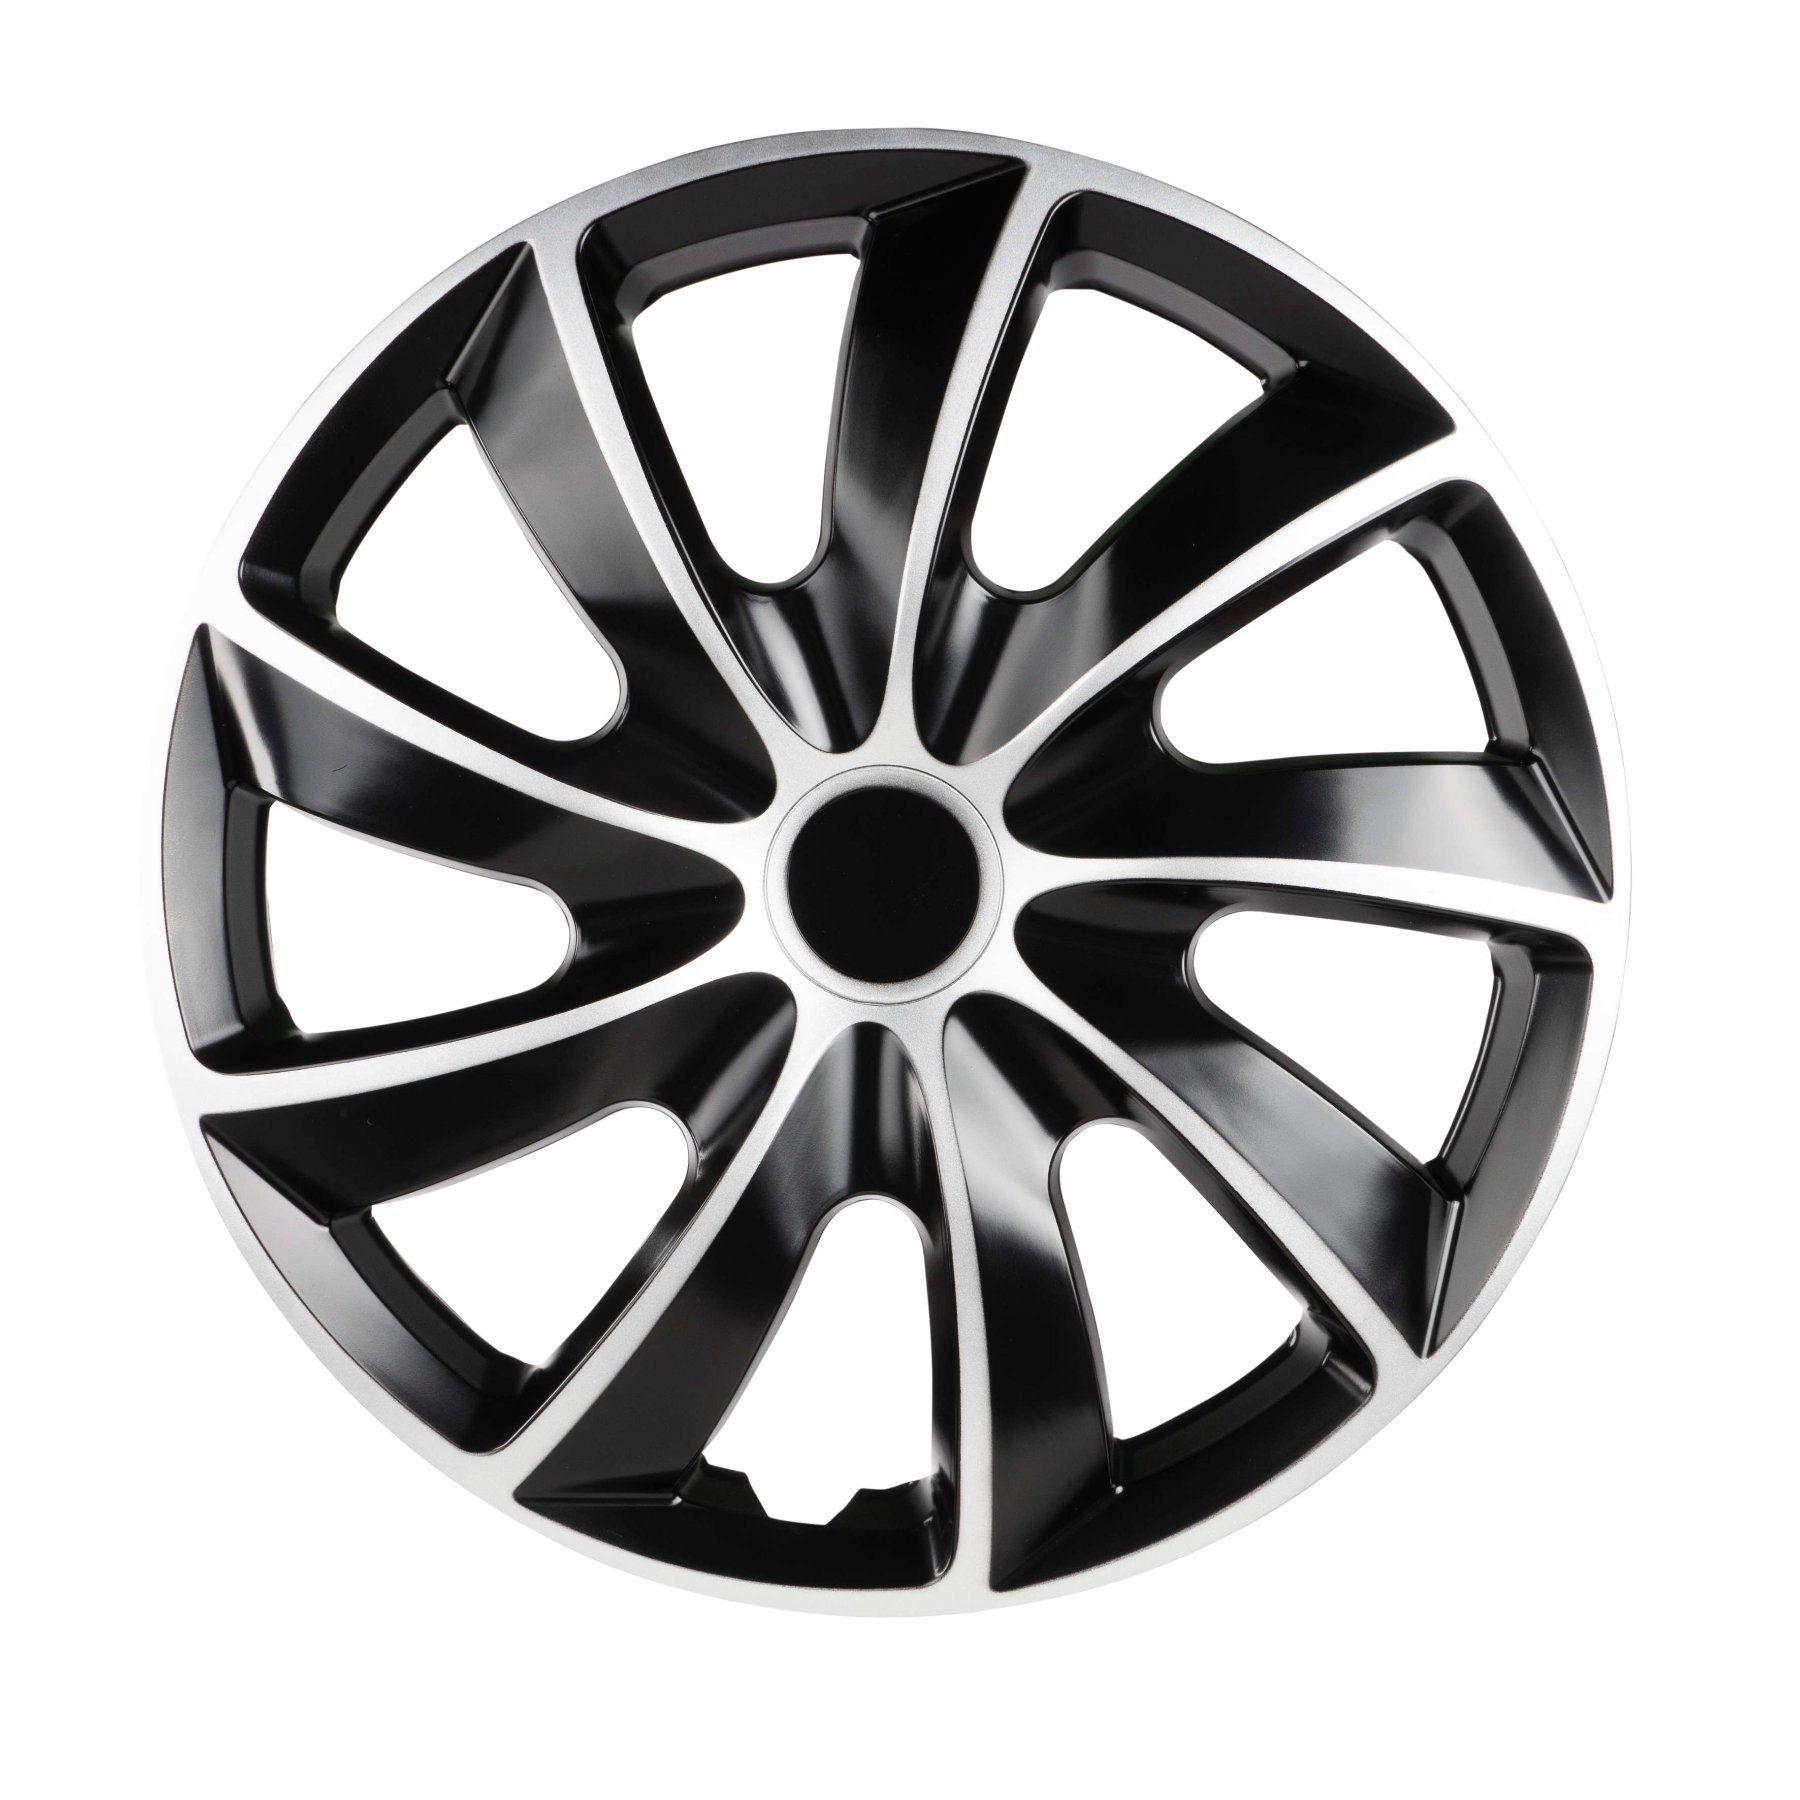 Wheel covers Aero Bicolor 16", 4 piece black/silver